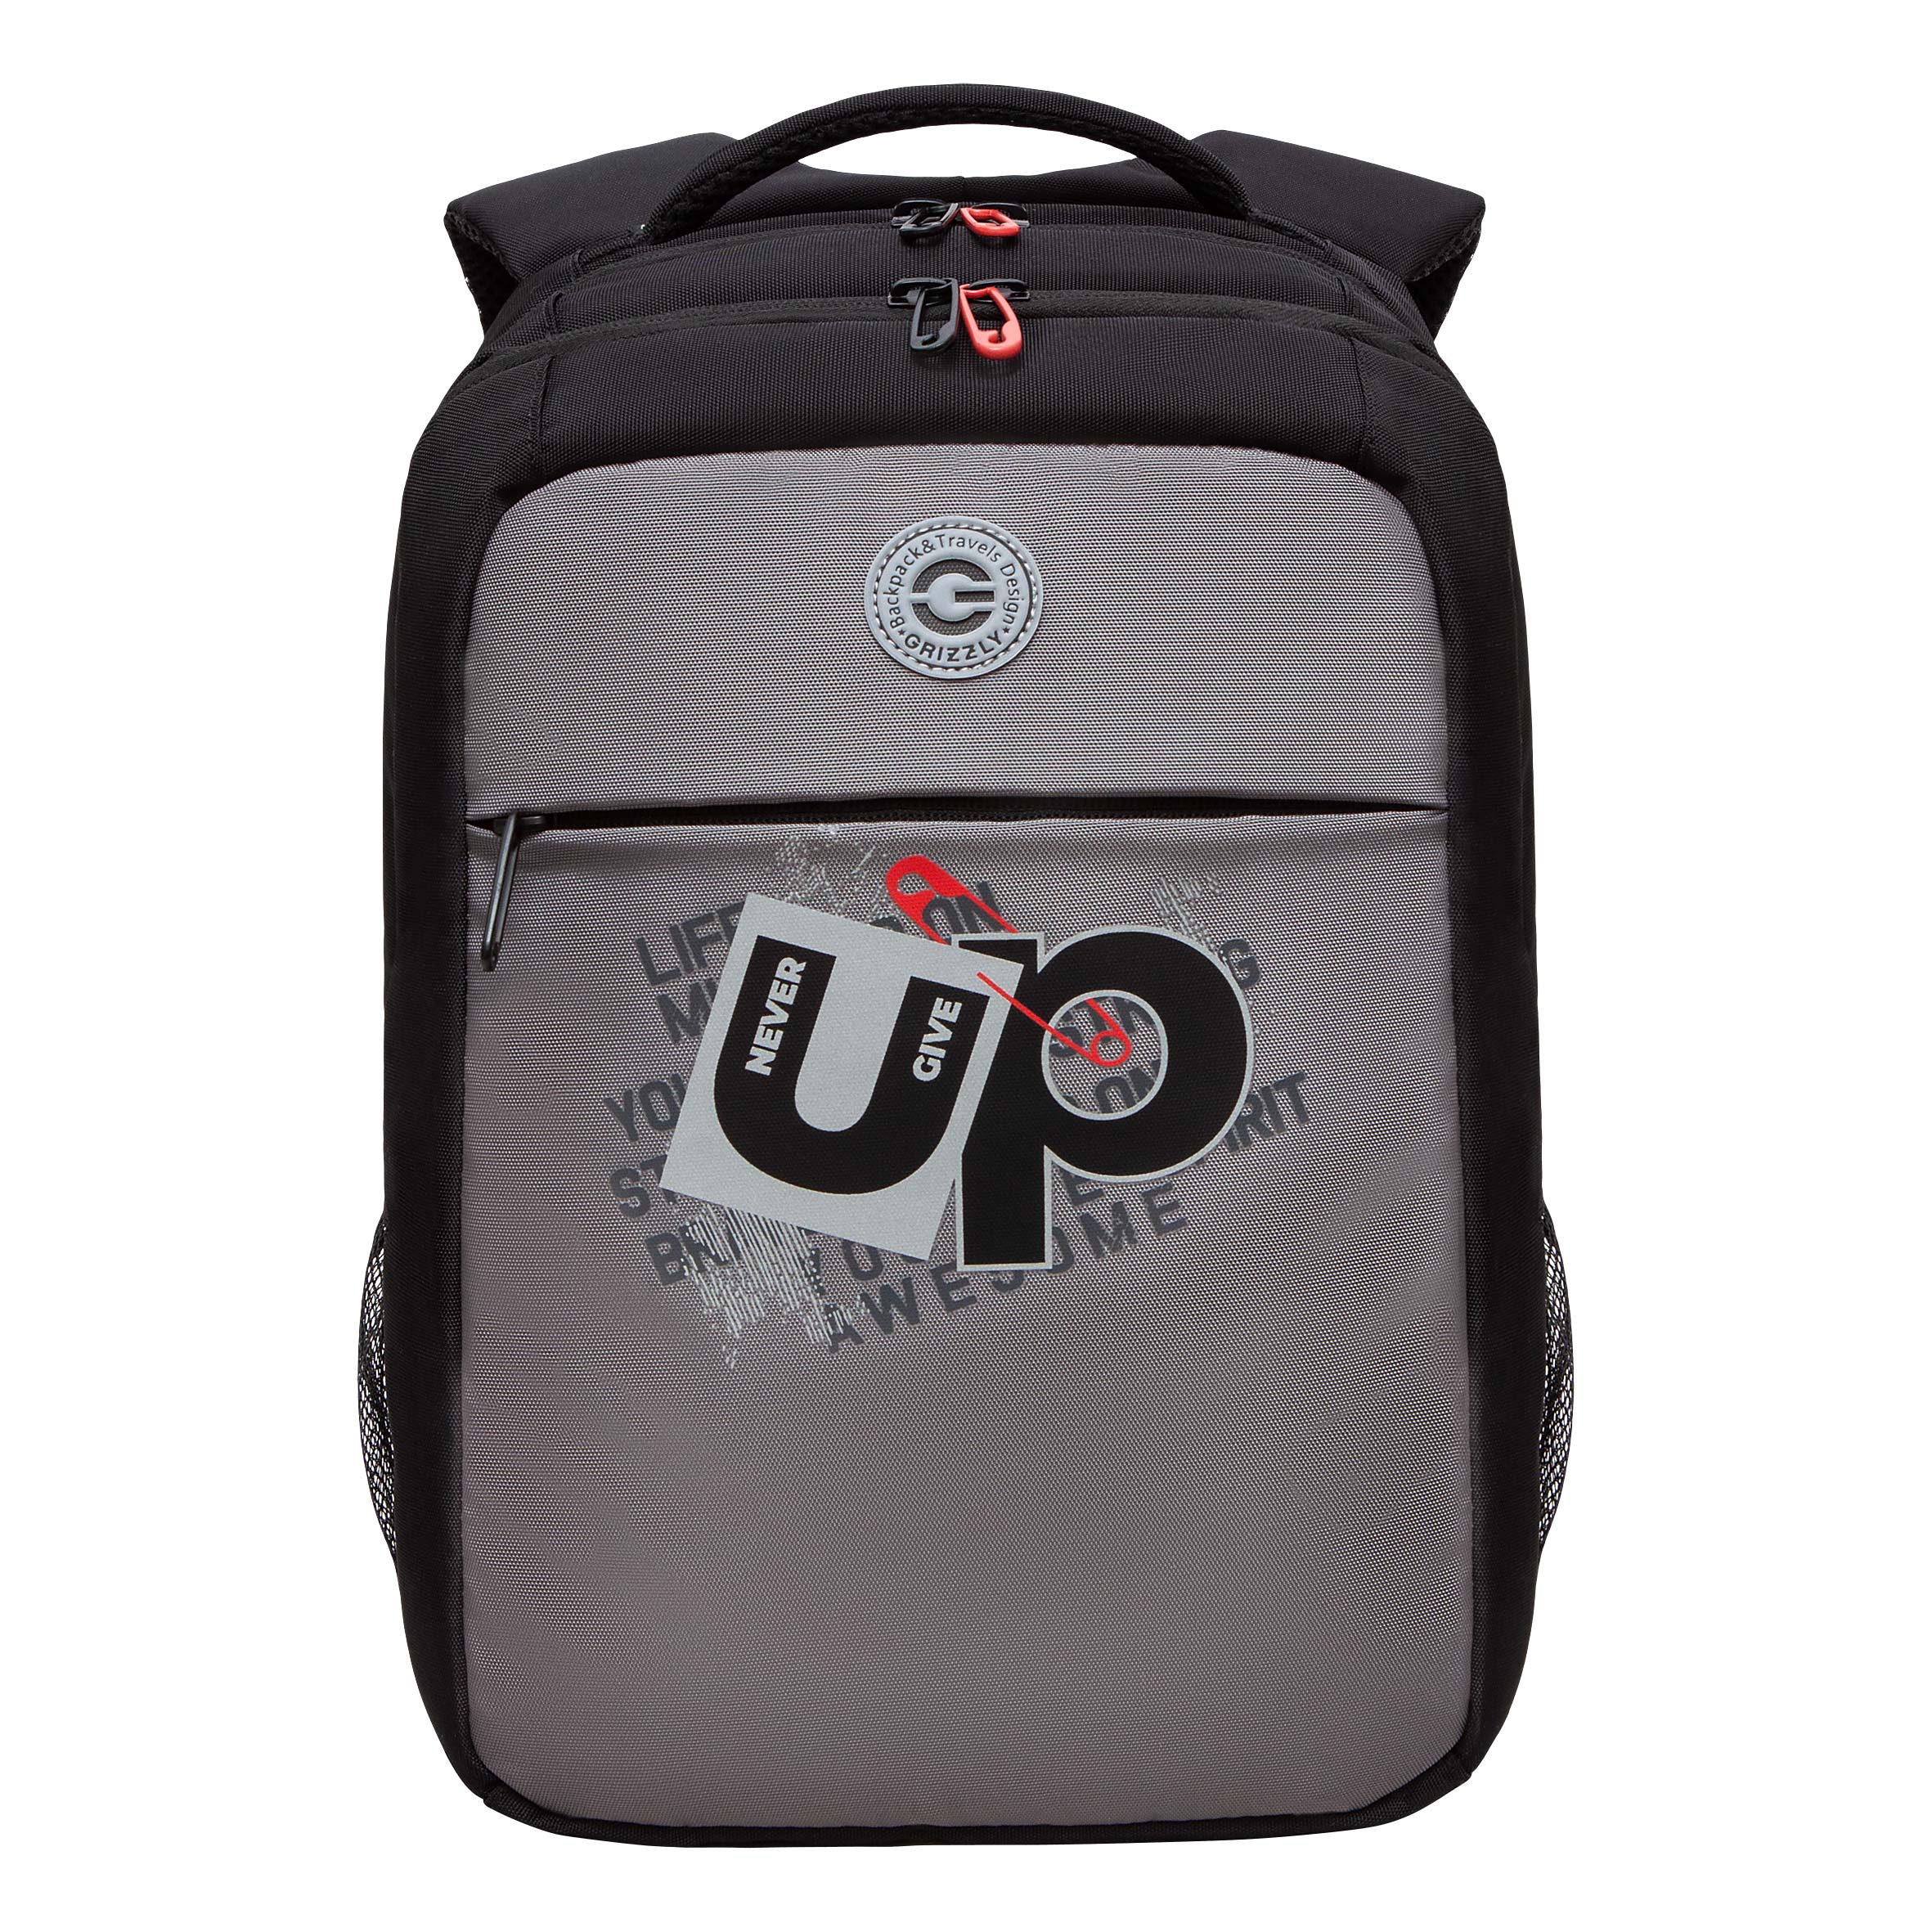 Рюкзак молодежный GRIZZLY с карманом для ноутбука 13, для мальчика, RB-456-3 2 рюкзак grizzly школьный для девочки rg 367 3 2 серый